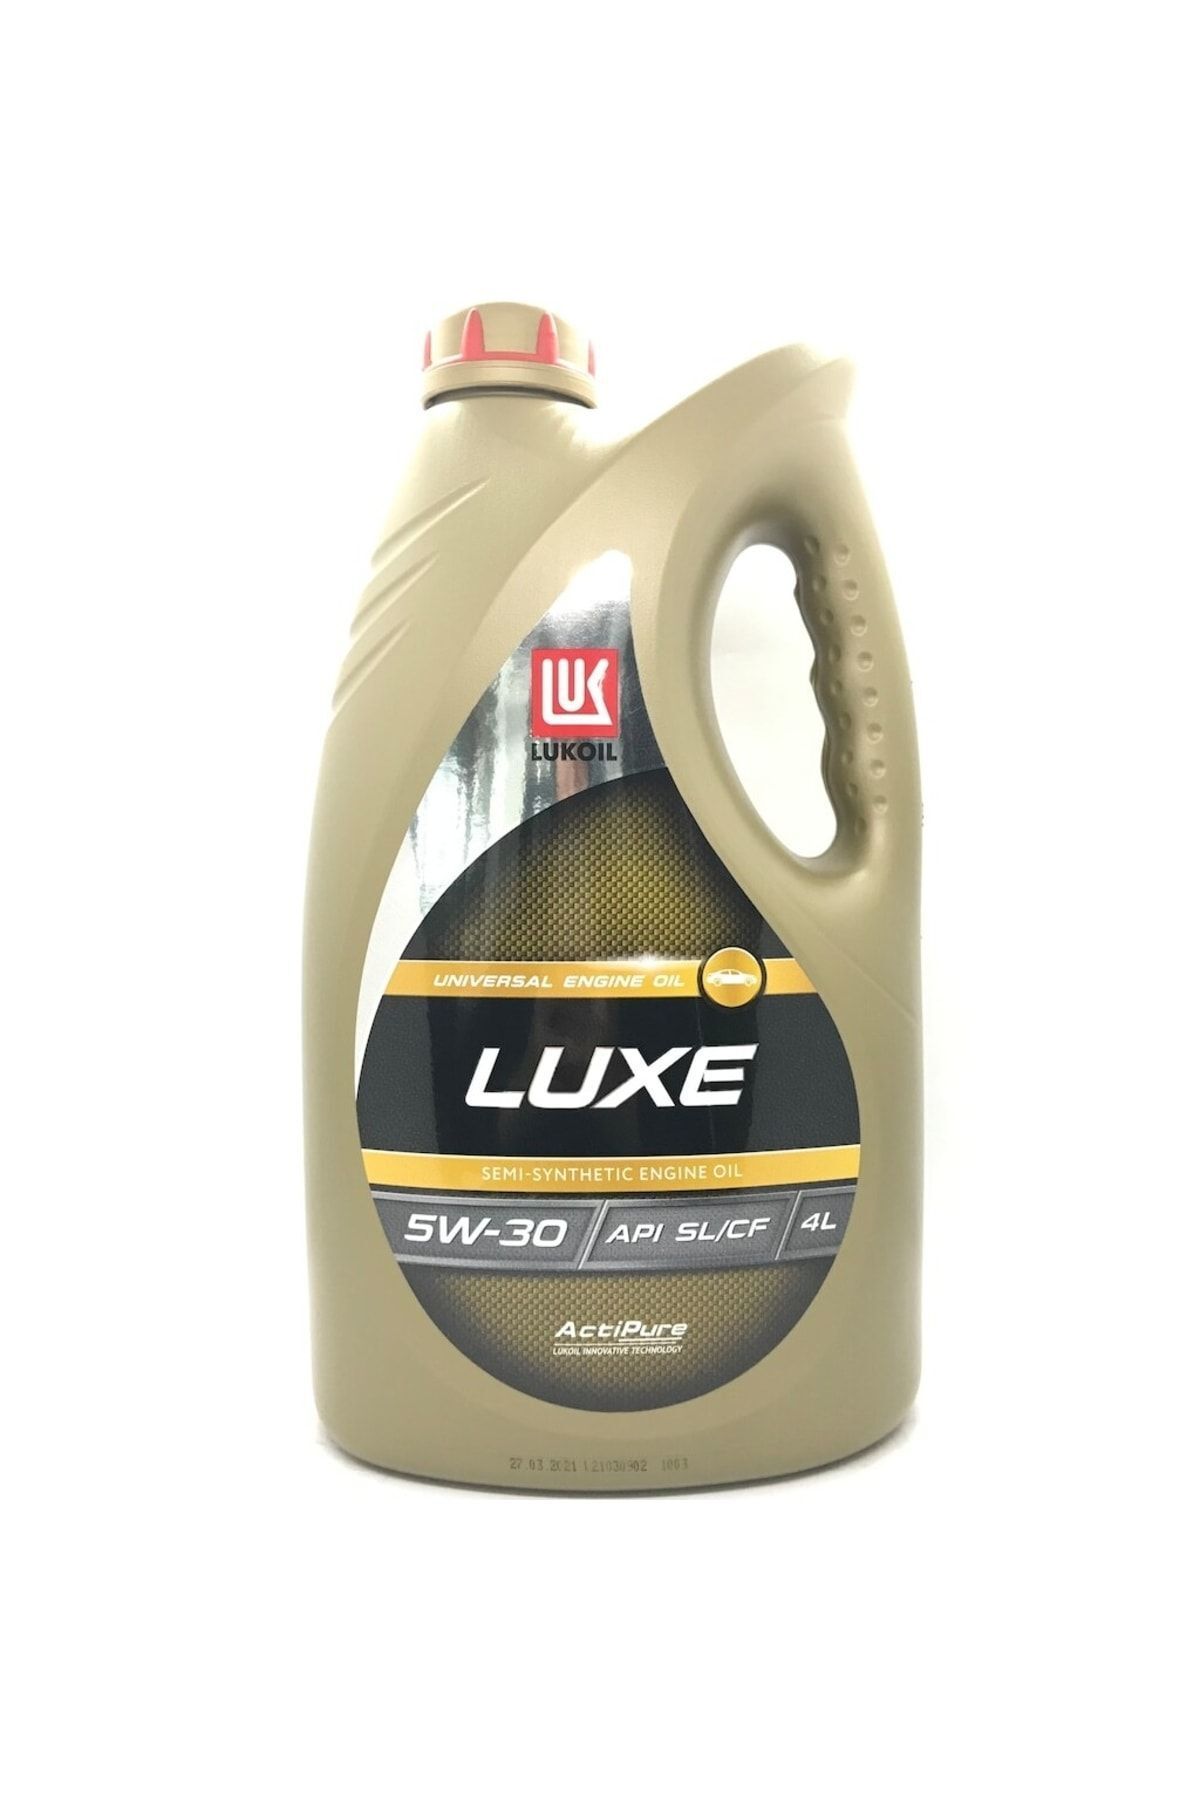 LUKOIL Luxe Akti Pure 5w-30 Semi-sentetik Motor Yağı 4 L